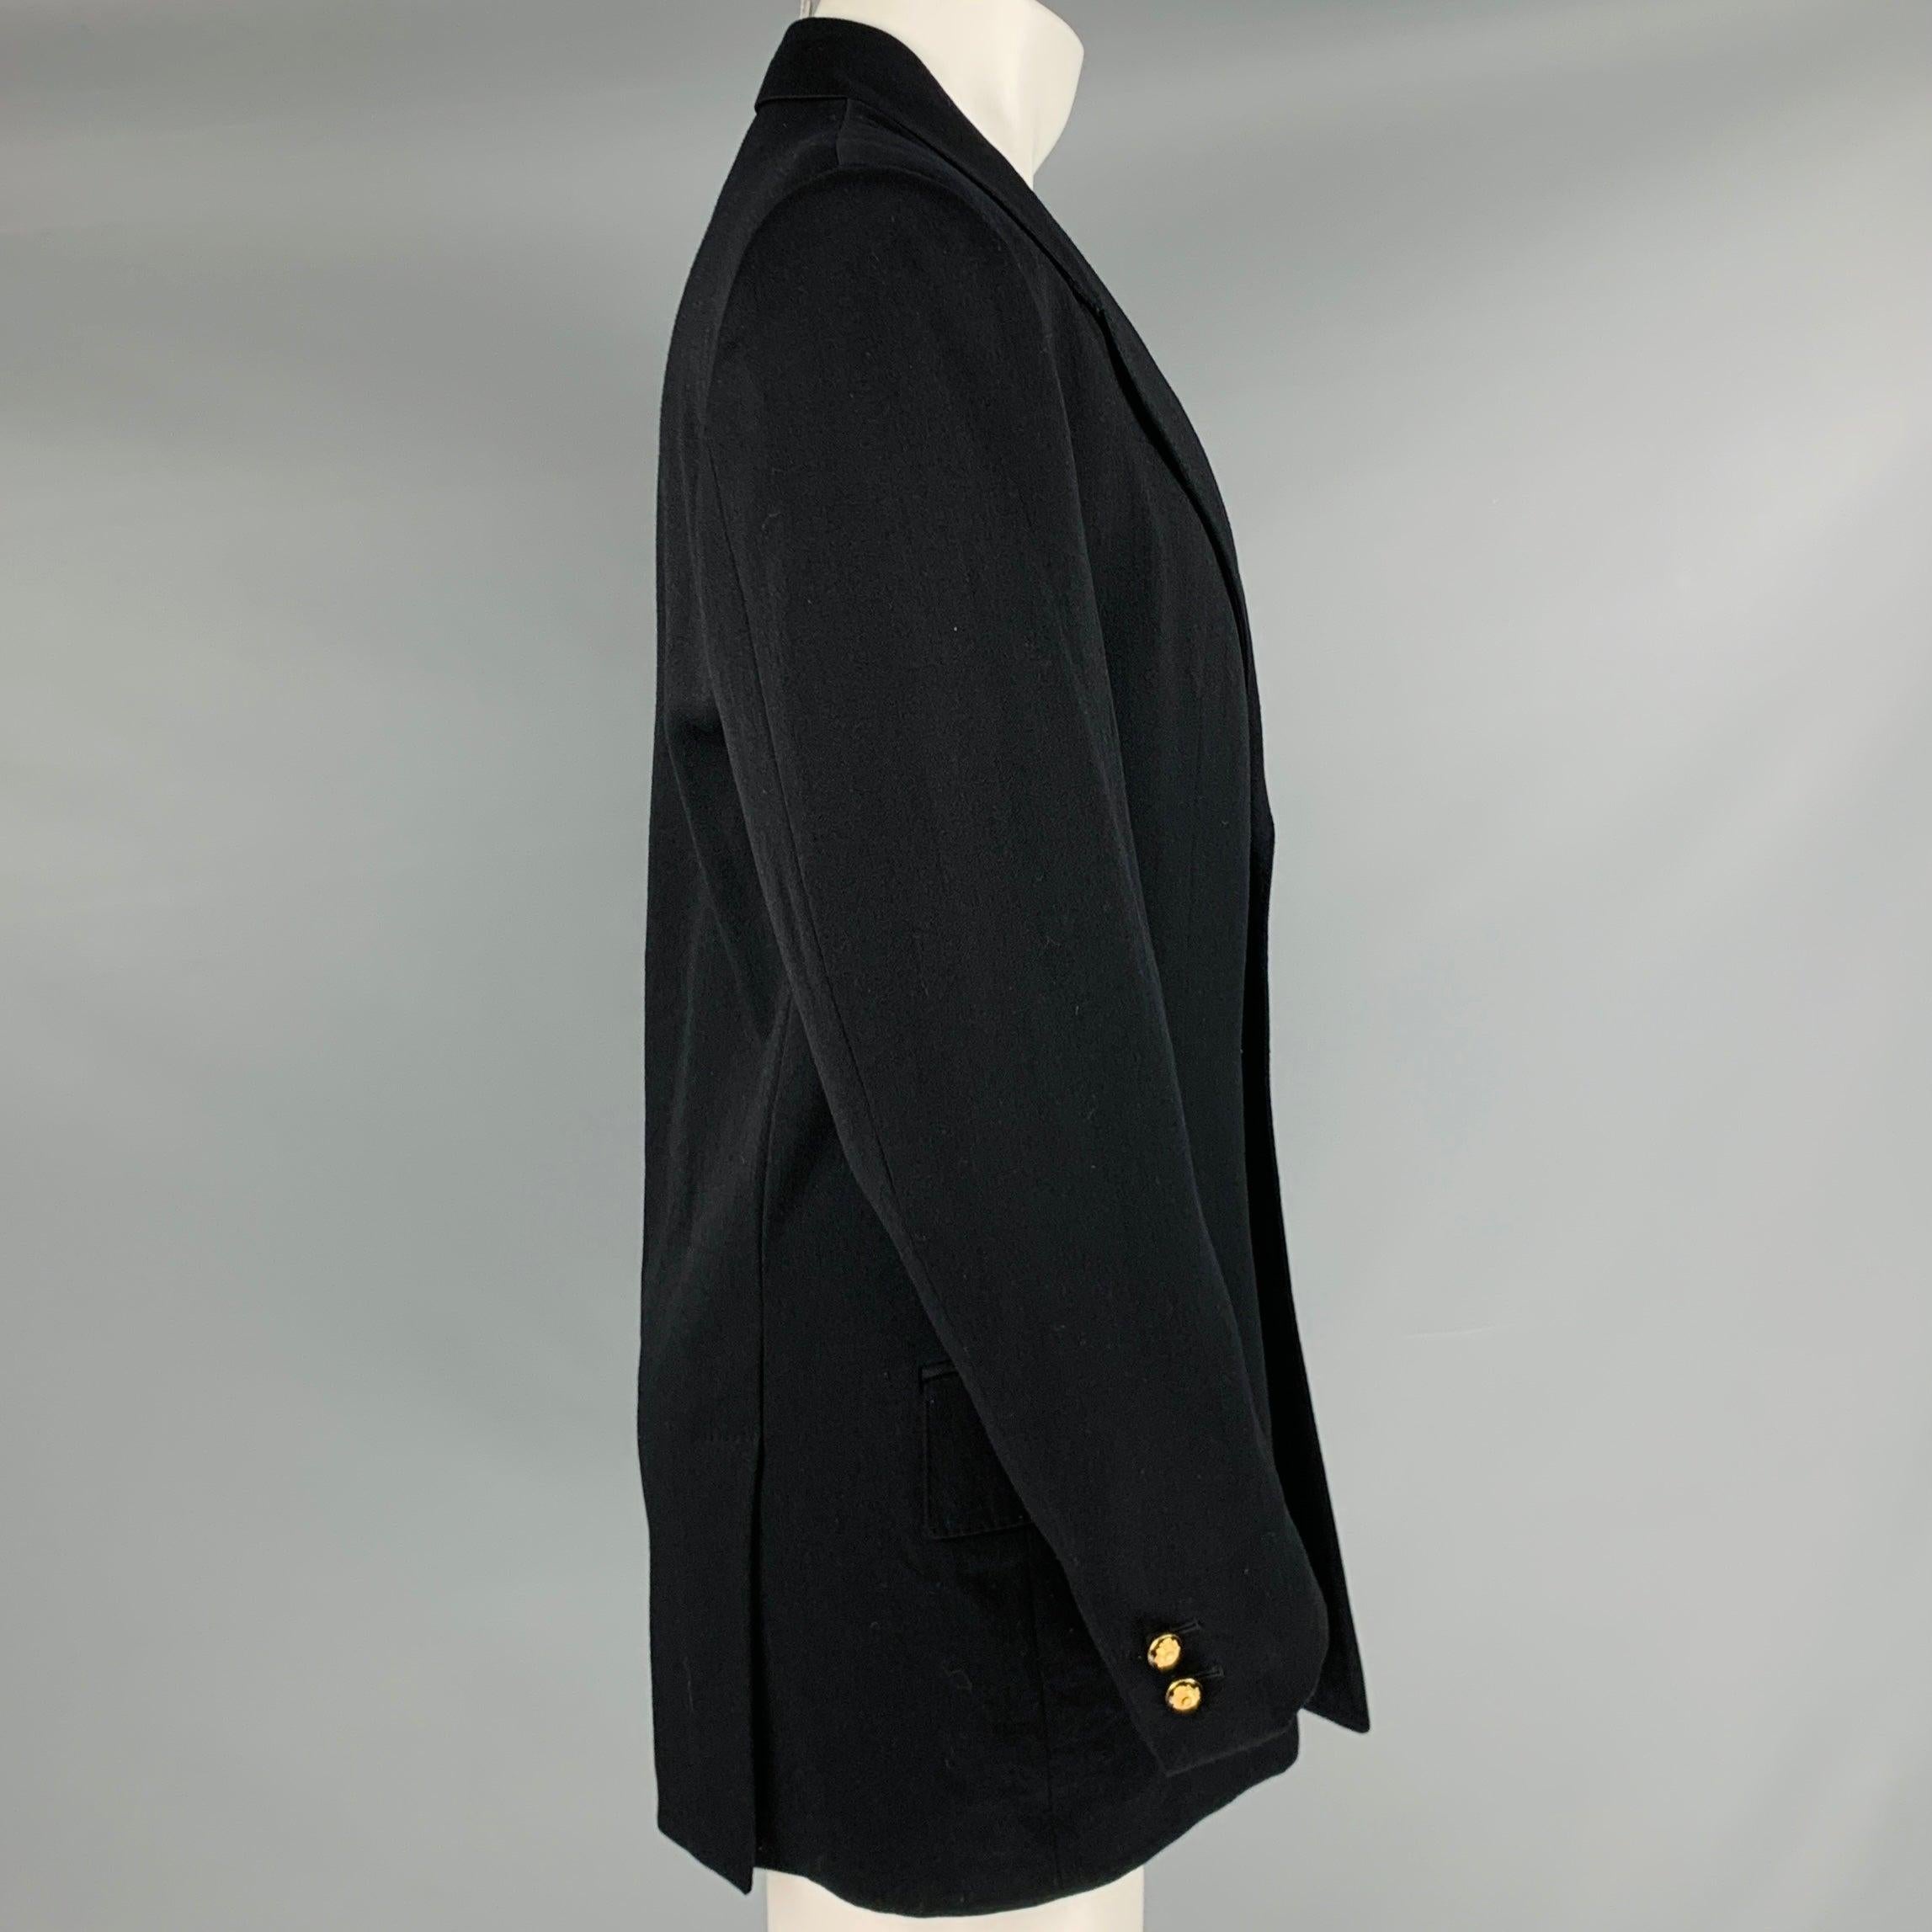 GIANNI VERSACE Jacke
aus schwarzem Wollstoff, einreihig, mit doppeltem Rückenschlitz und Drei-Knopf-Verschluss, in ausgezeichnetem, gebrauchtem Zustand. 

Markiert:   IT 50 

Abmessungen: 
 
Schultern: 19 Zoll Brustumfang: 40 Zoll Ärmelumfang: 25